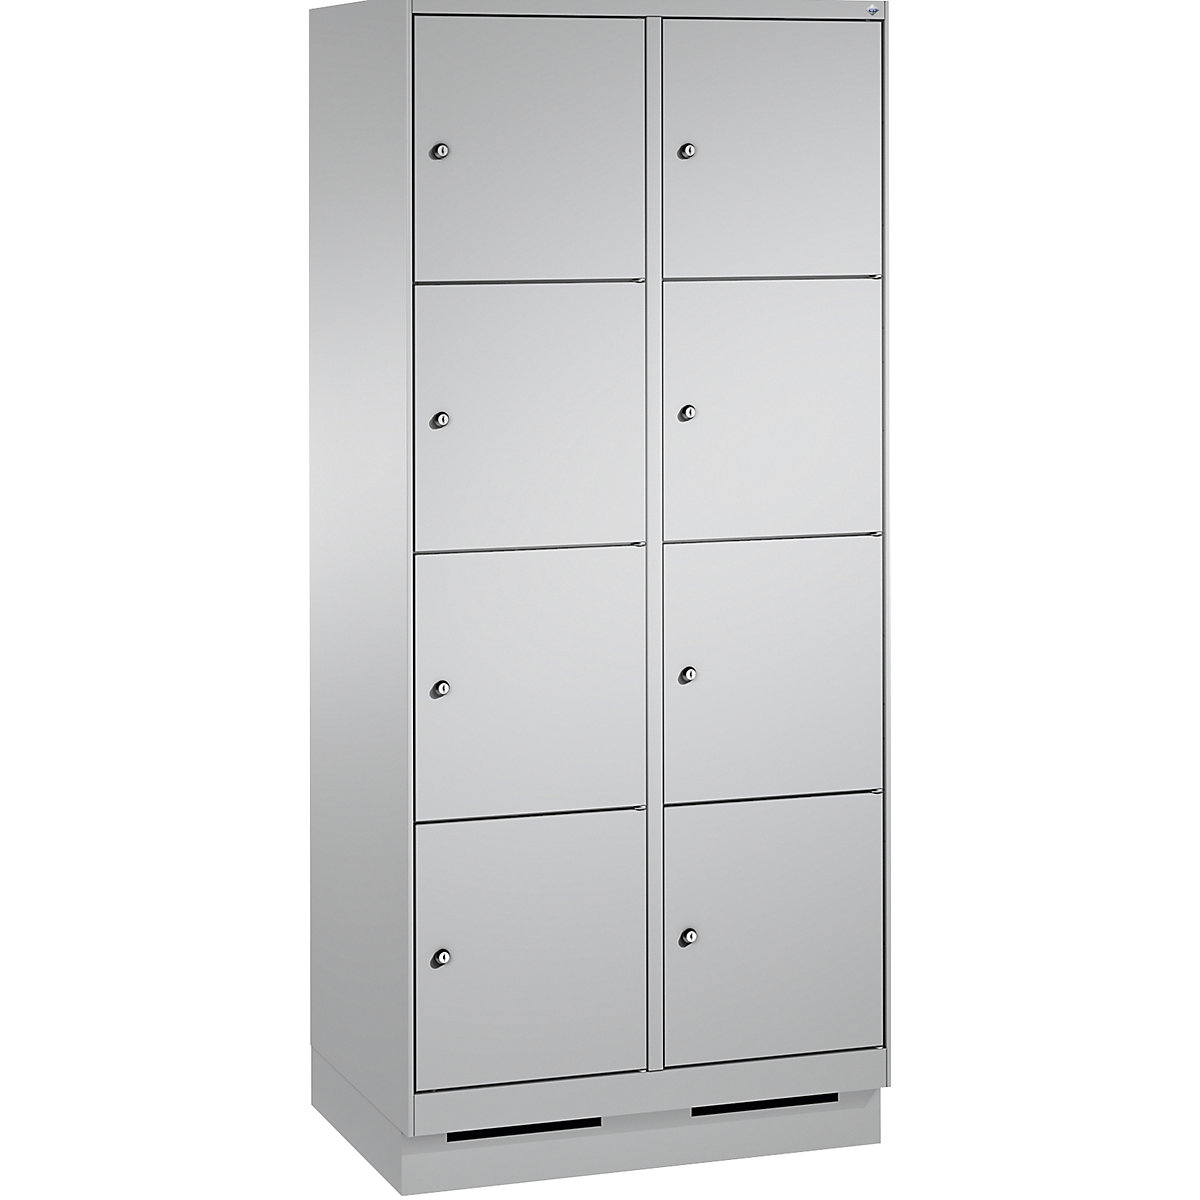 Armoire à casiers sur socle EVOLO – C+P, 2 compartiments, 4 casiers chacun, largeur compartiments 400 mm, aluminium / aluminium-10